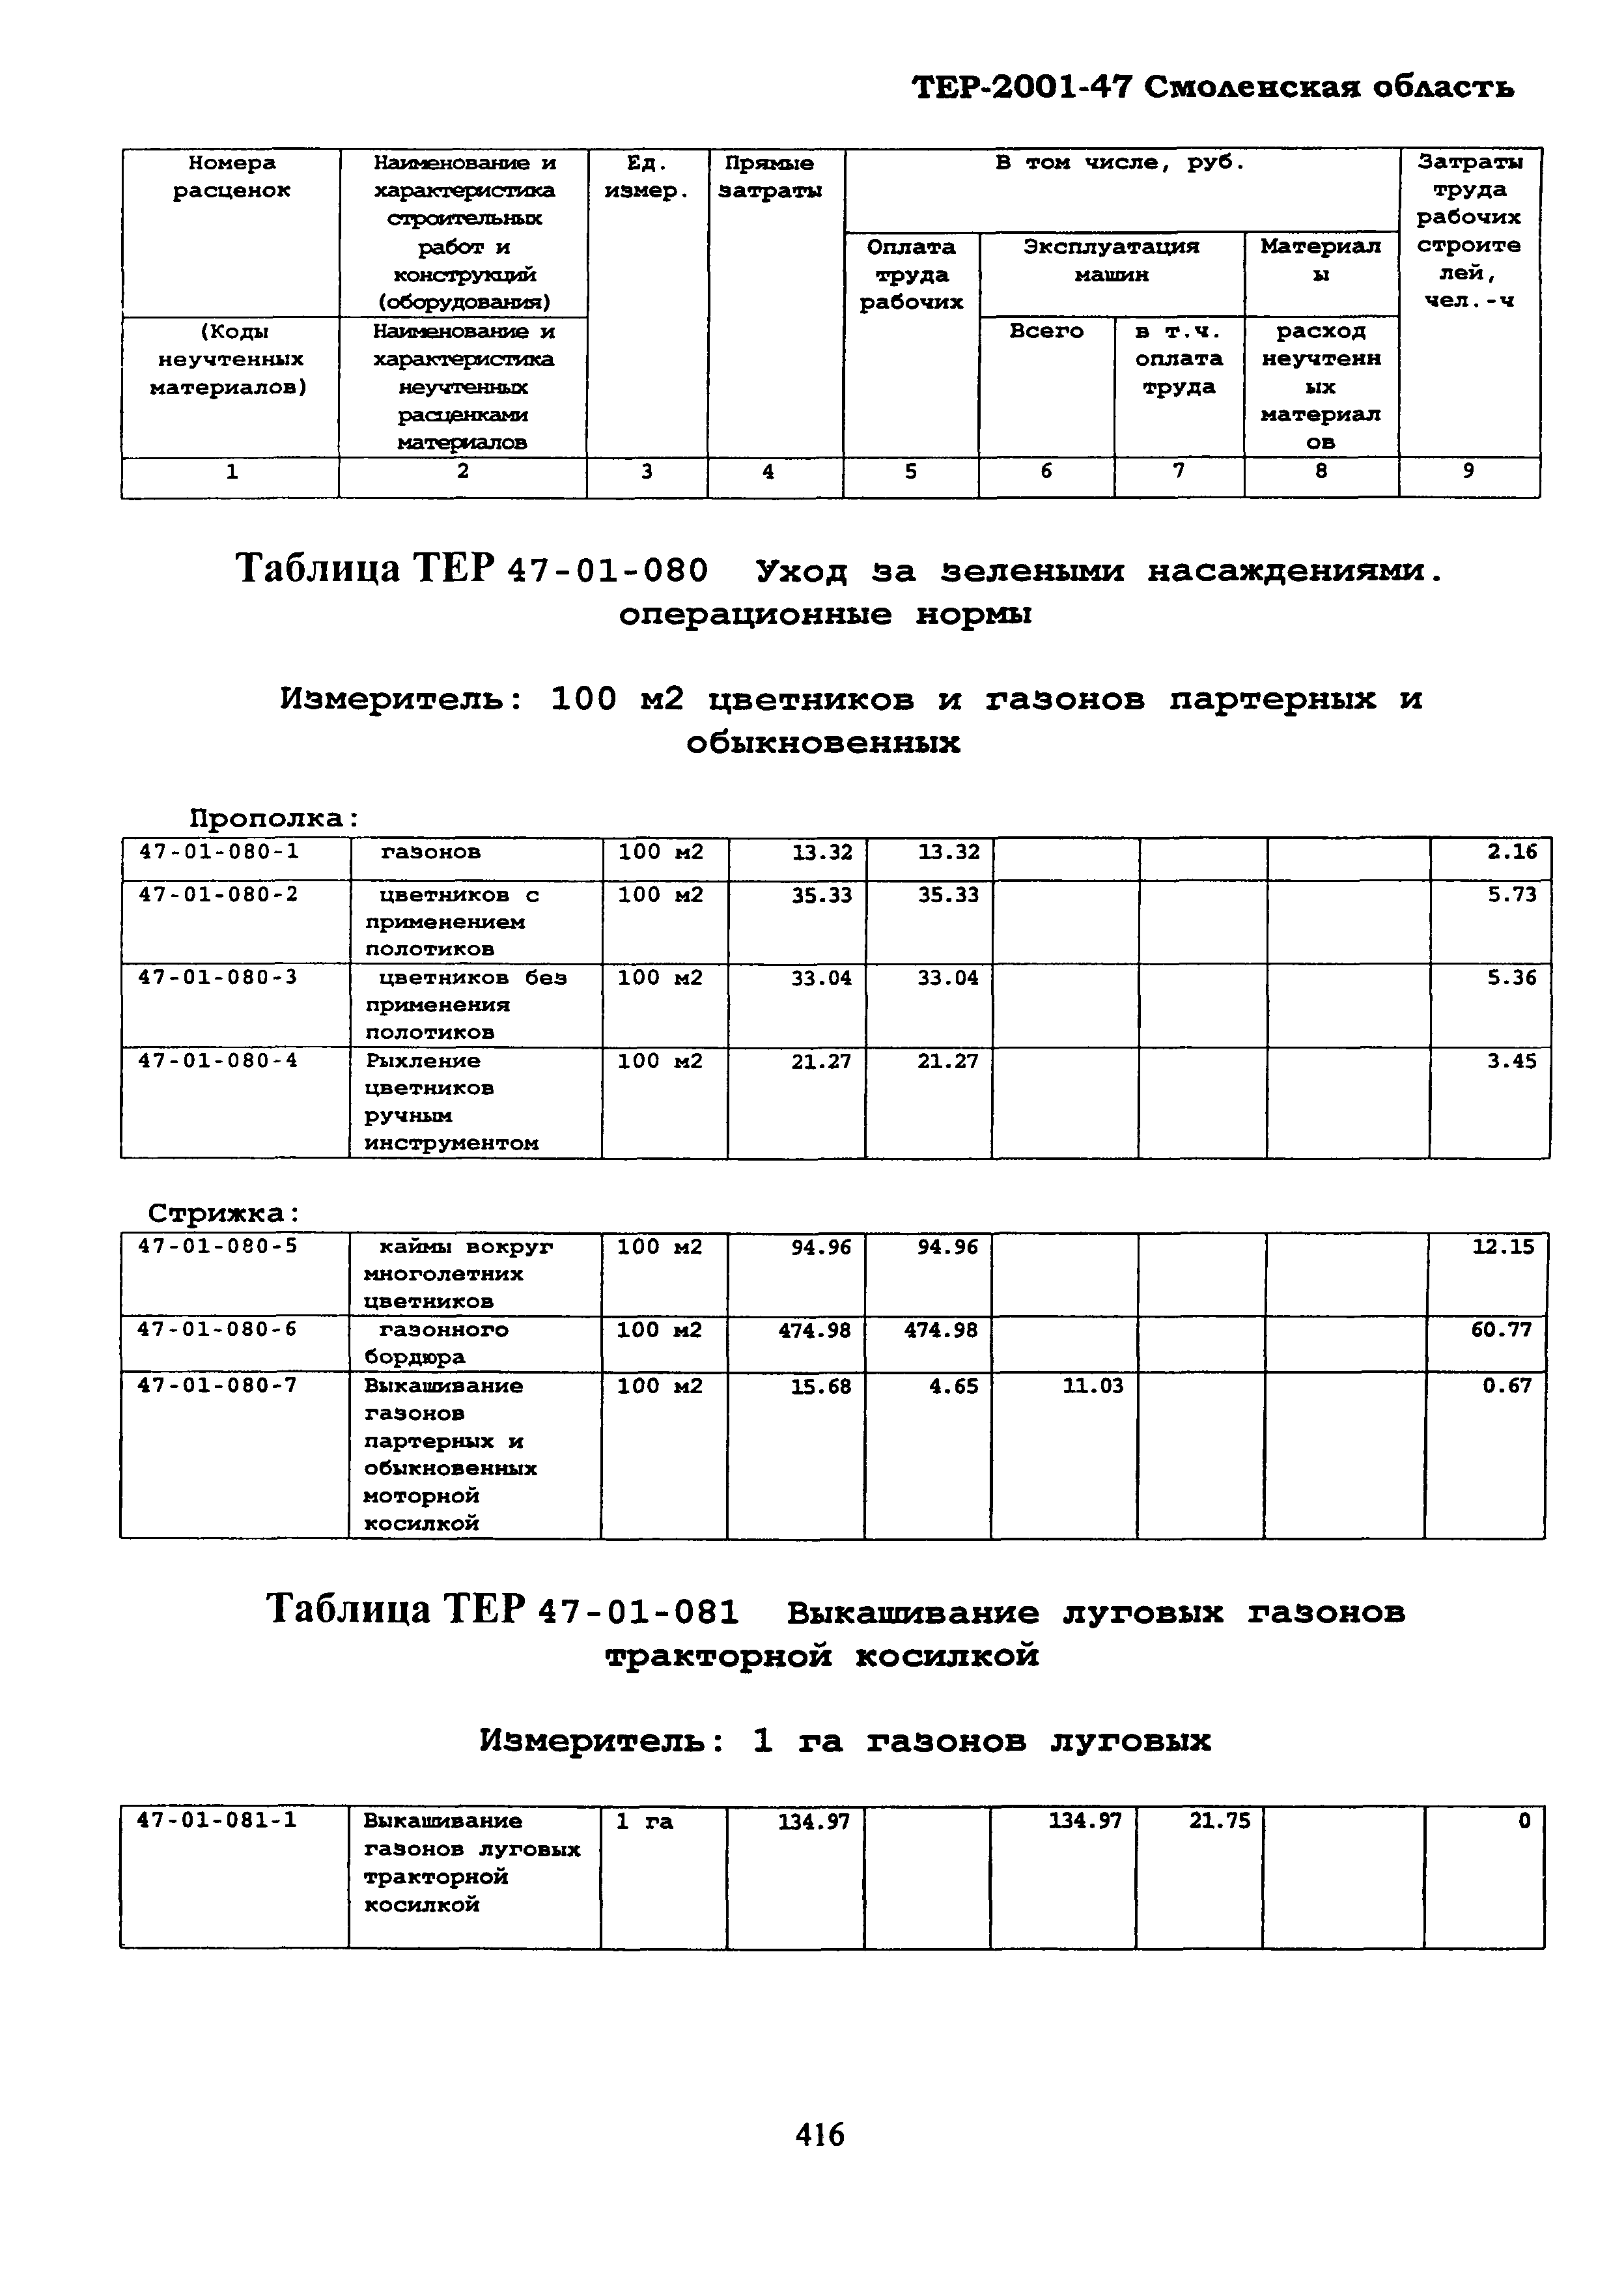 ТЕР Смоленской обл. 2001-47